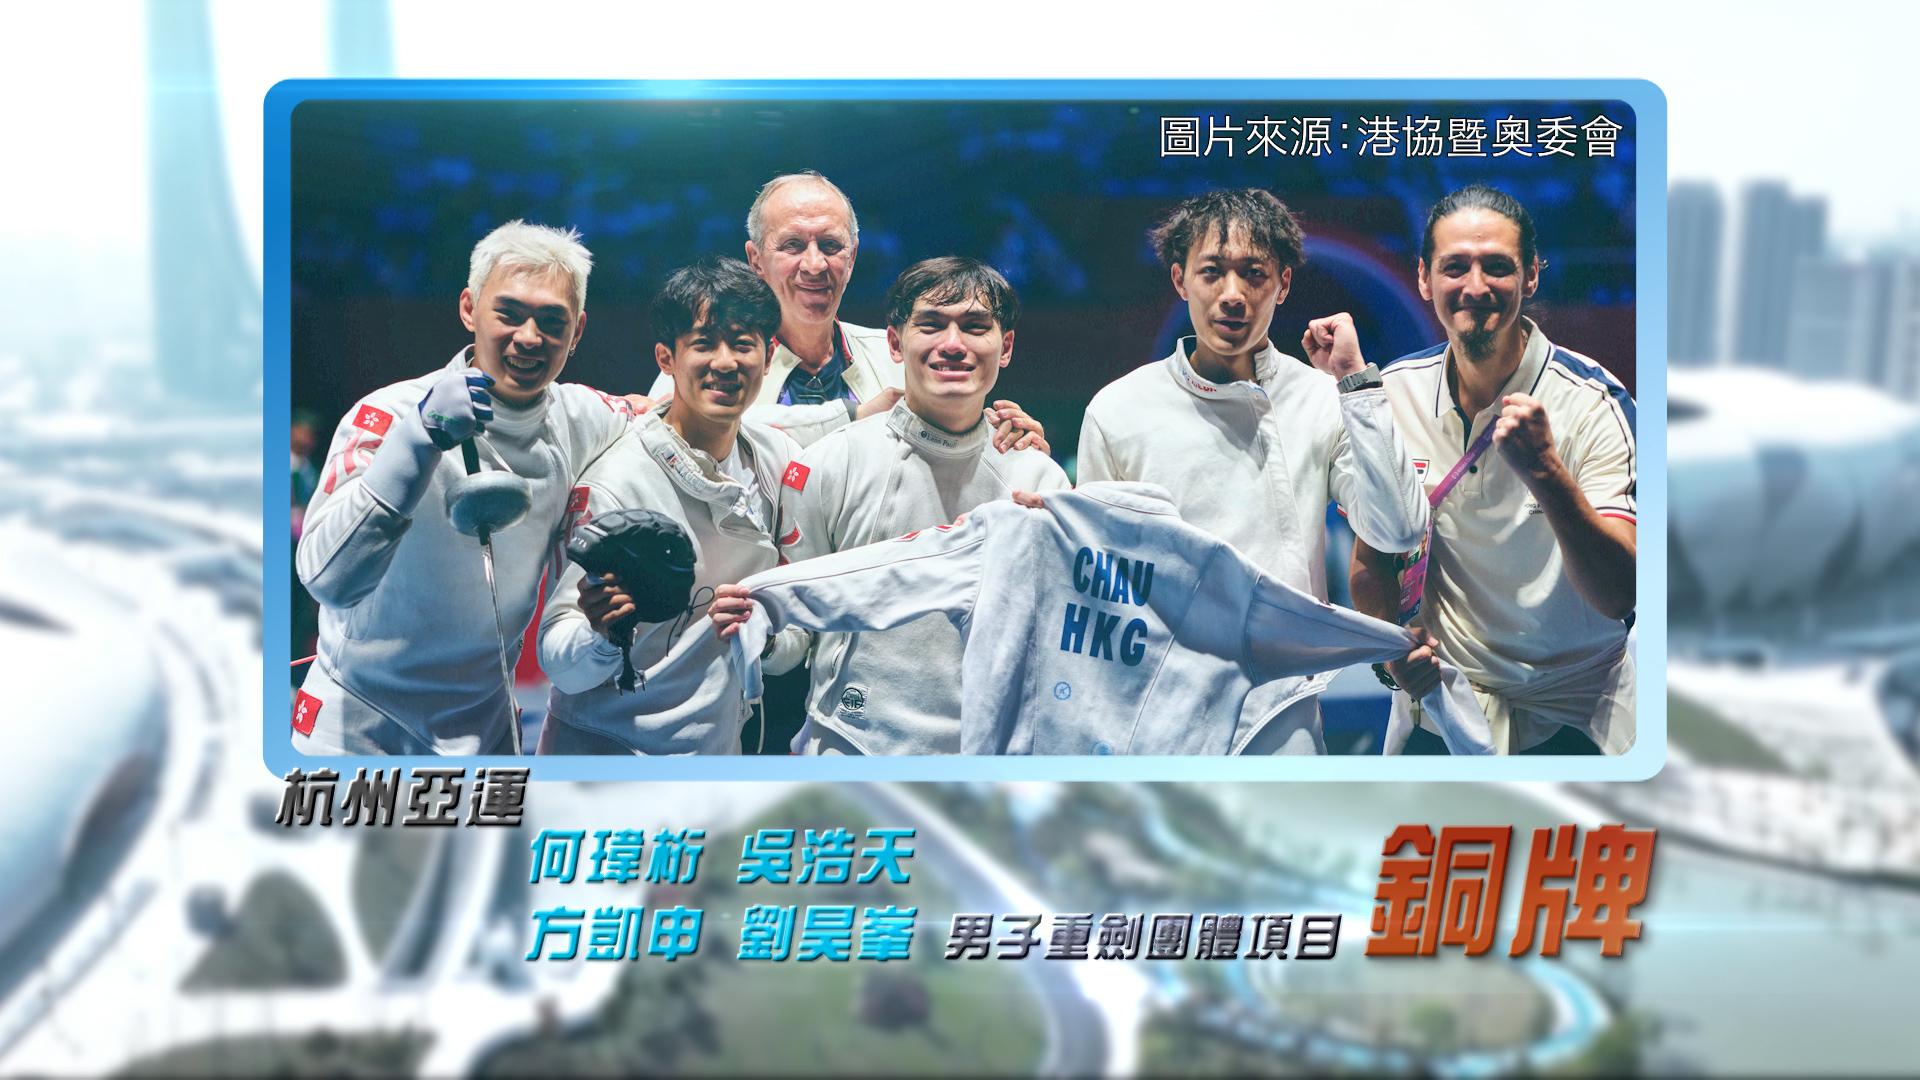 恭喜何玮桁、吴浩天、方凯申、刘昊峯于杭州亚运男子重剑团体赛夺铜！